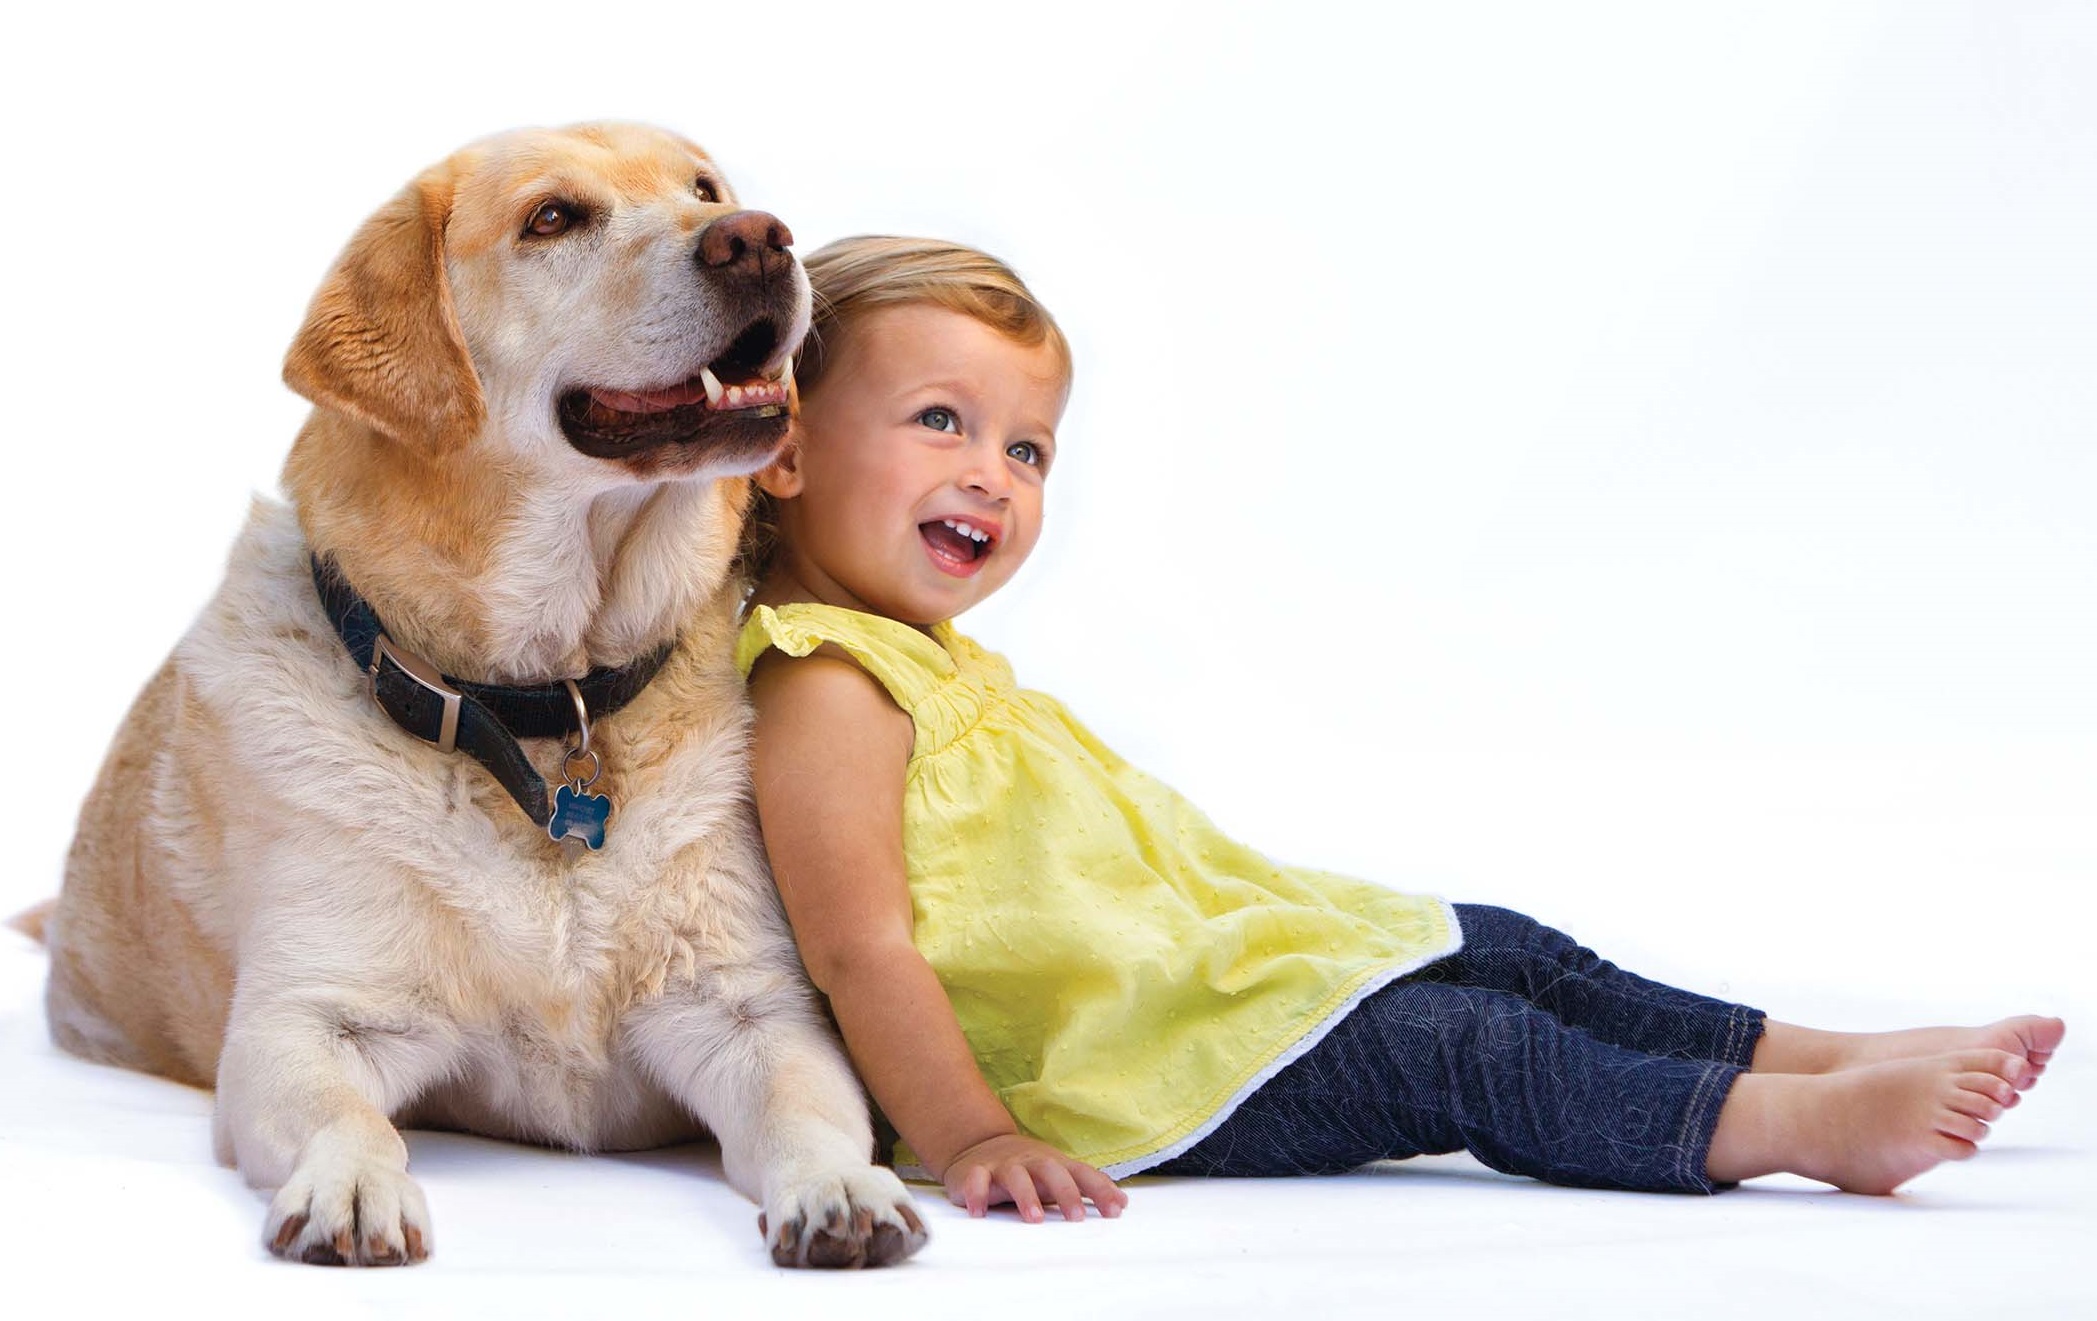 Keeping pets перевод. Собака для детей. Домашние животные для детей. Домашняя собака для детей. Домашние животные и человек.